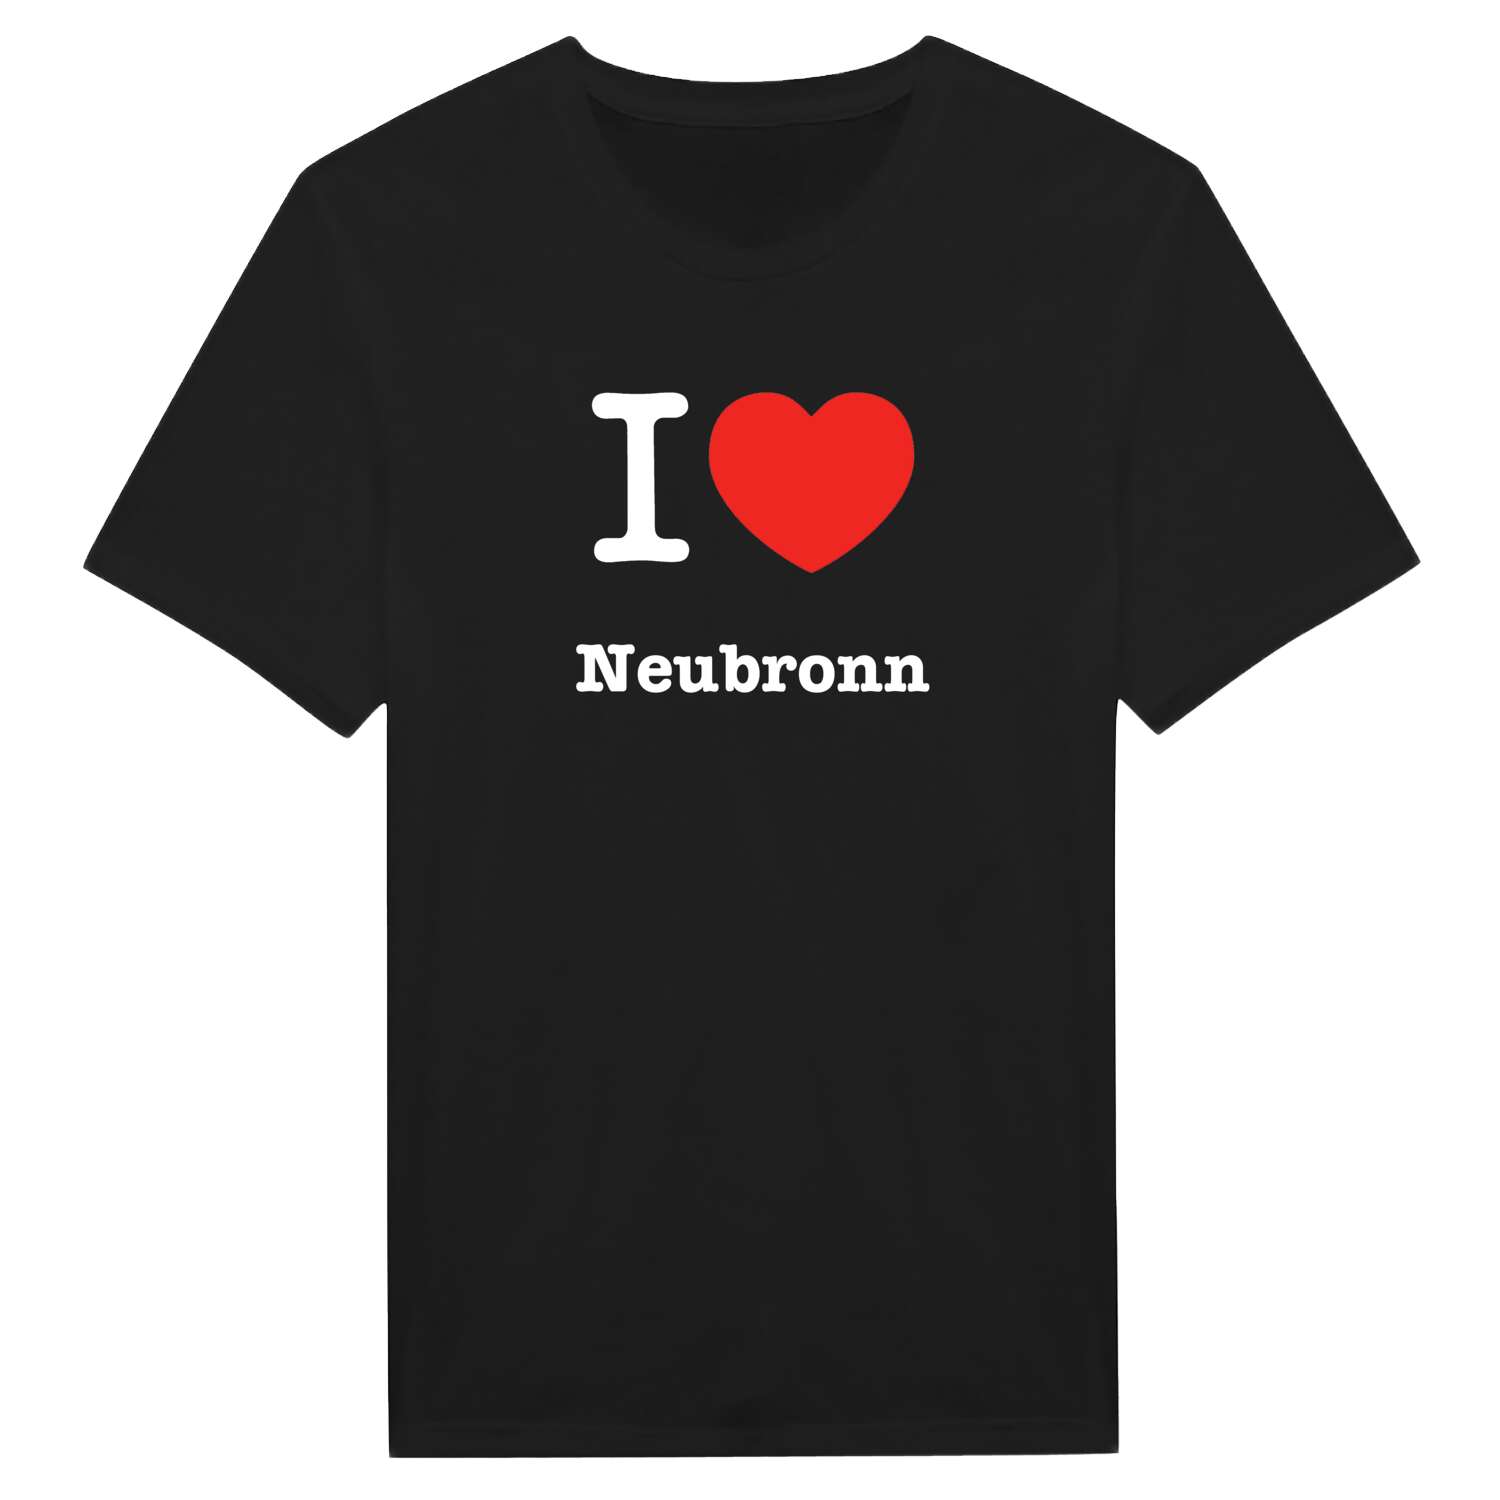 Neubronn T-Shirt »I love«